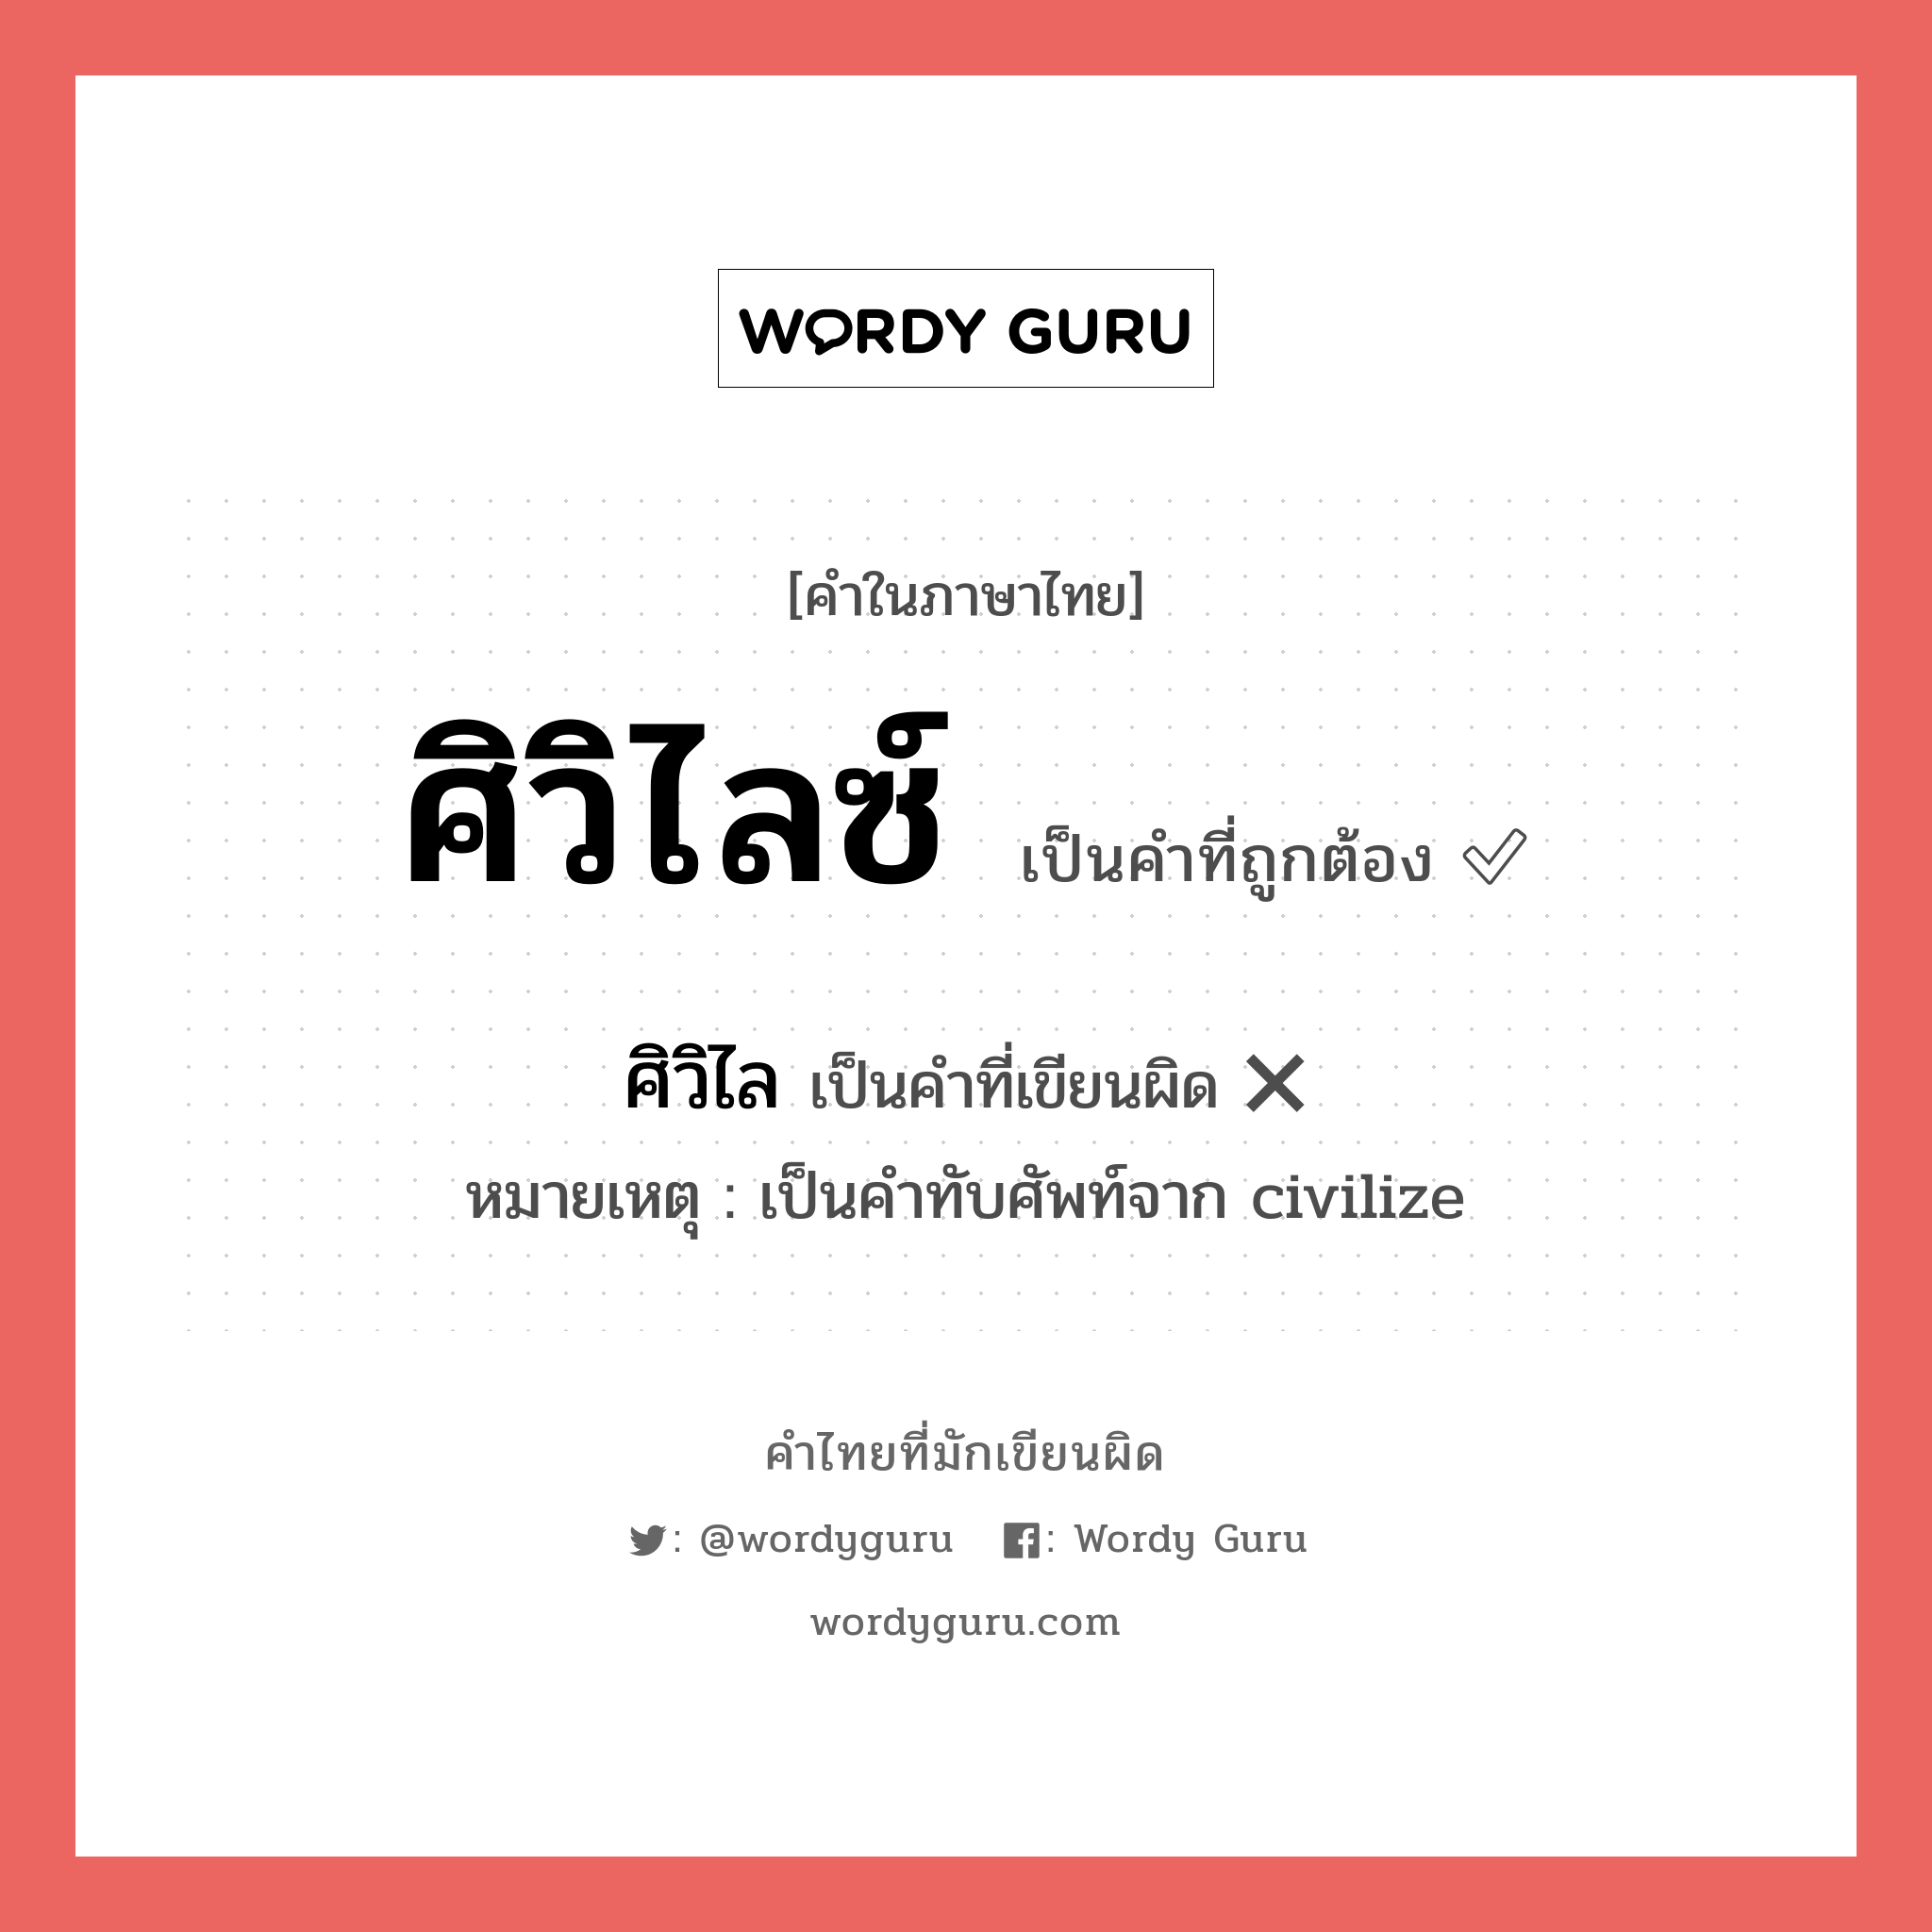 ศิวิไลซ์ หรือ ศิวิไล คำไหนเขียนถูก?, คำในภาษาไทยที่มักเขียนผิด ศิวิไลซ์ คำที่ผิด ❌ ศิวิไล หมายเหตุ เป็นคำทับศัพท์จาก civilize